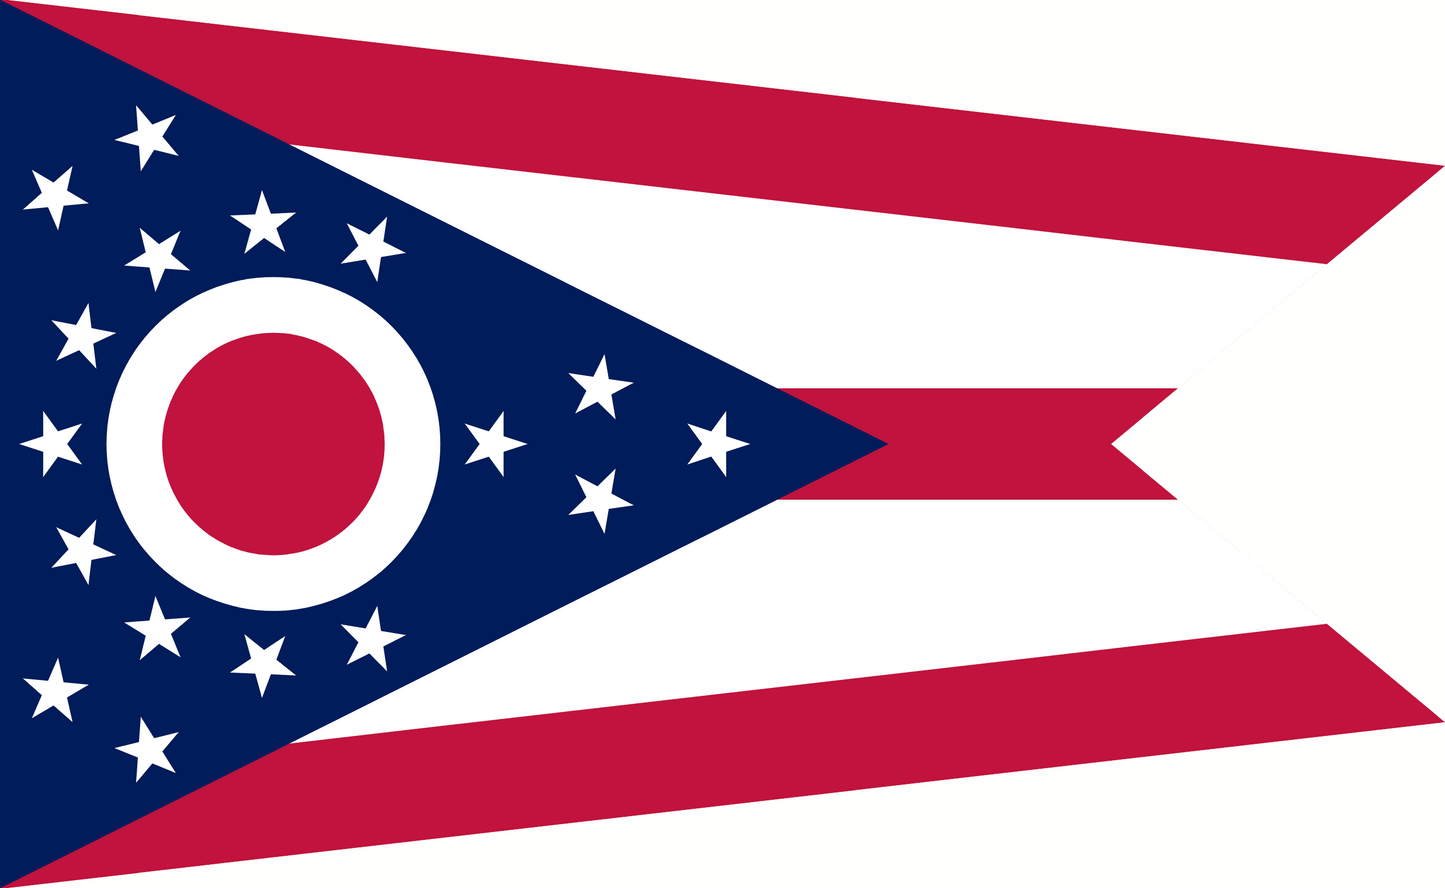 Ohio State Flag - 3x5 Feet